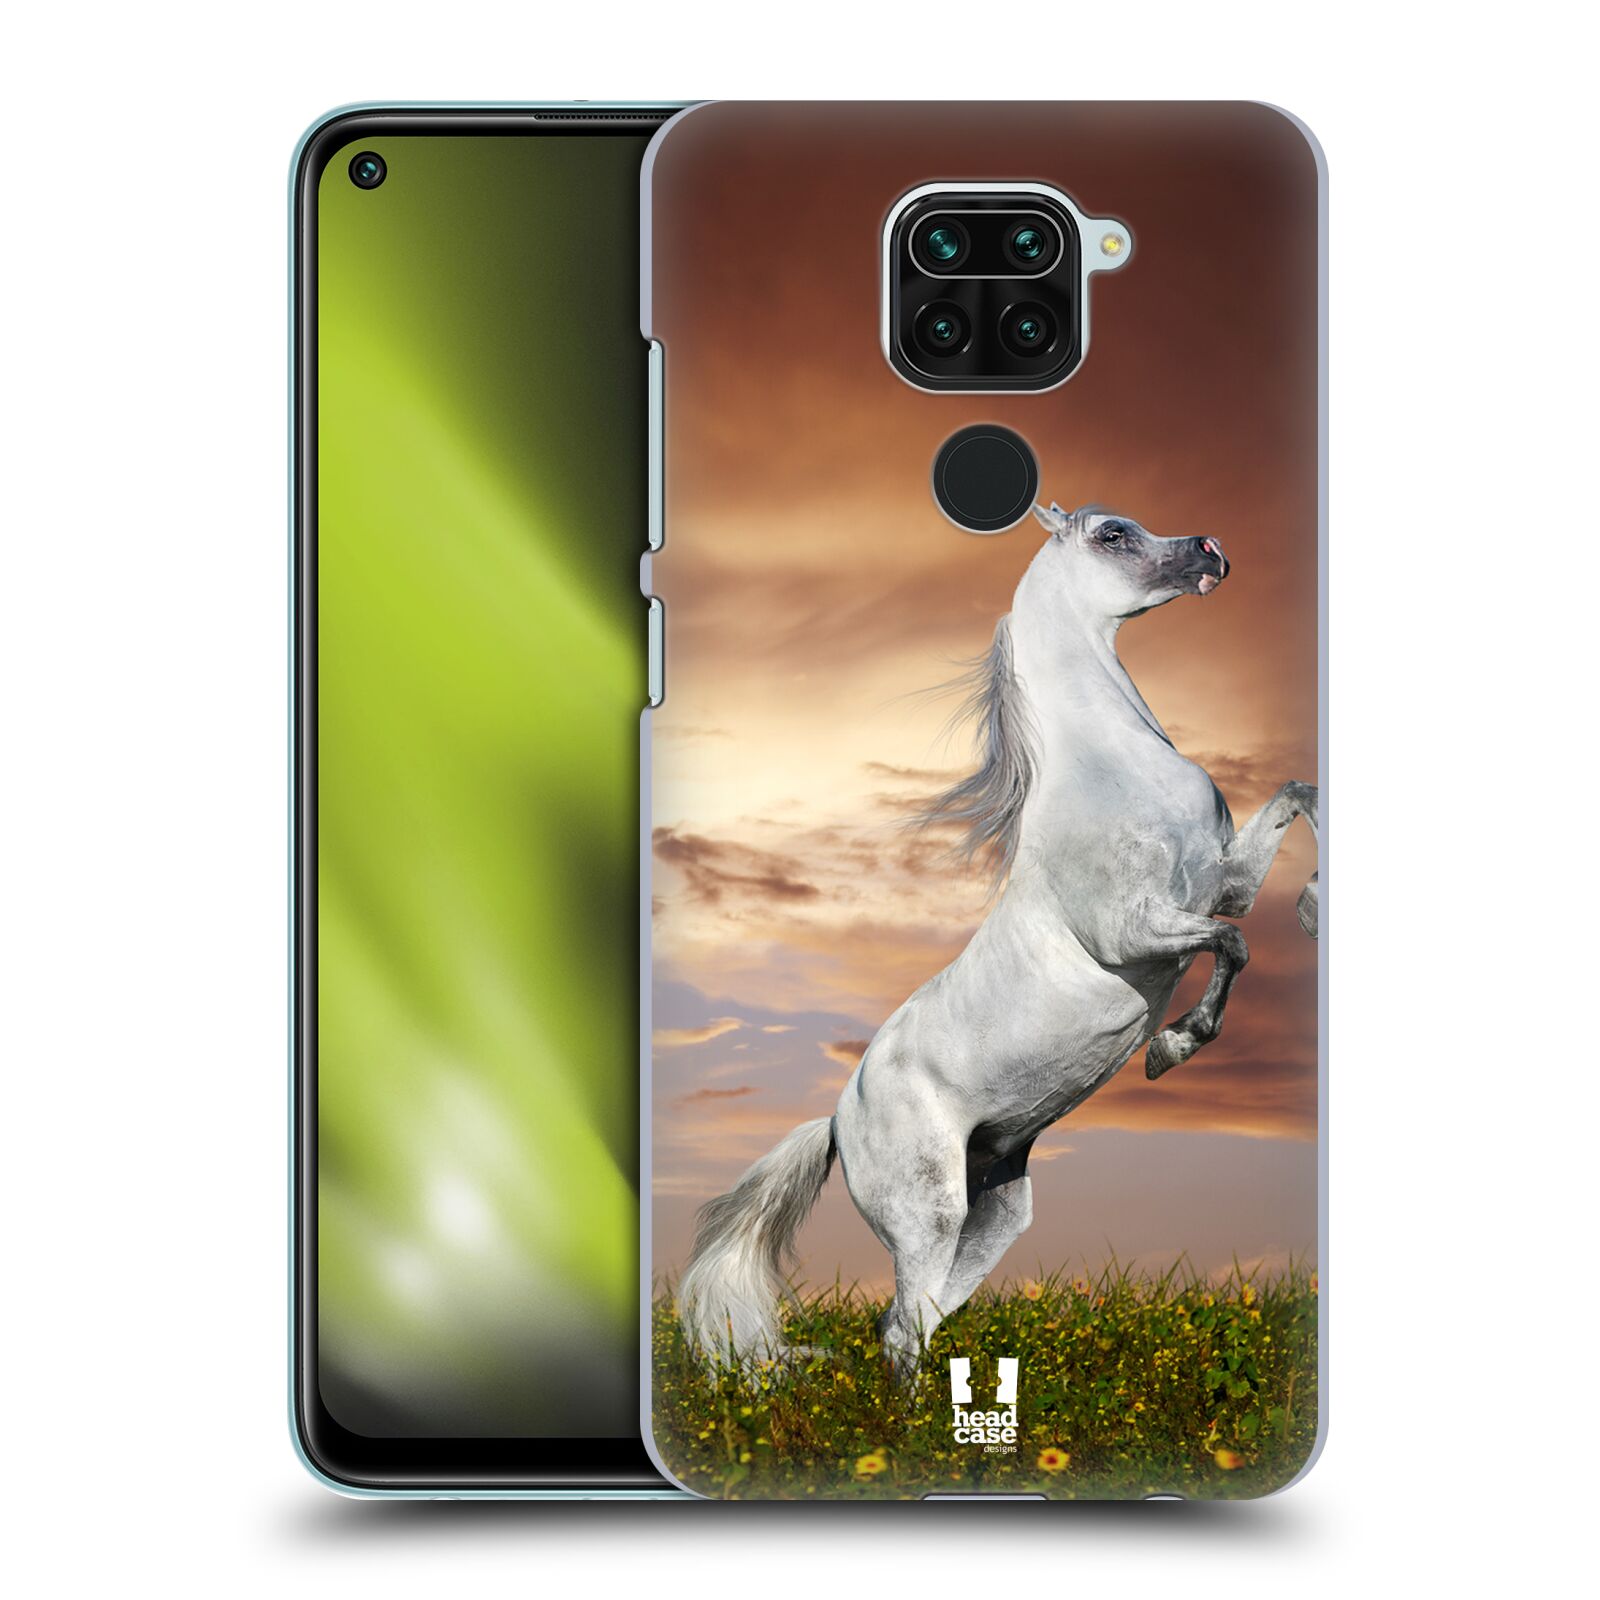 Zadní obal pro mobil Xiaomi Redmi Note 9 - HEAD CASE - Svět zvířat divoký kůň